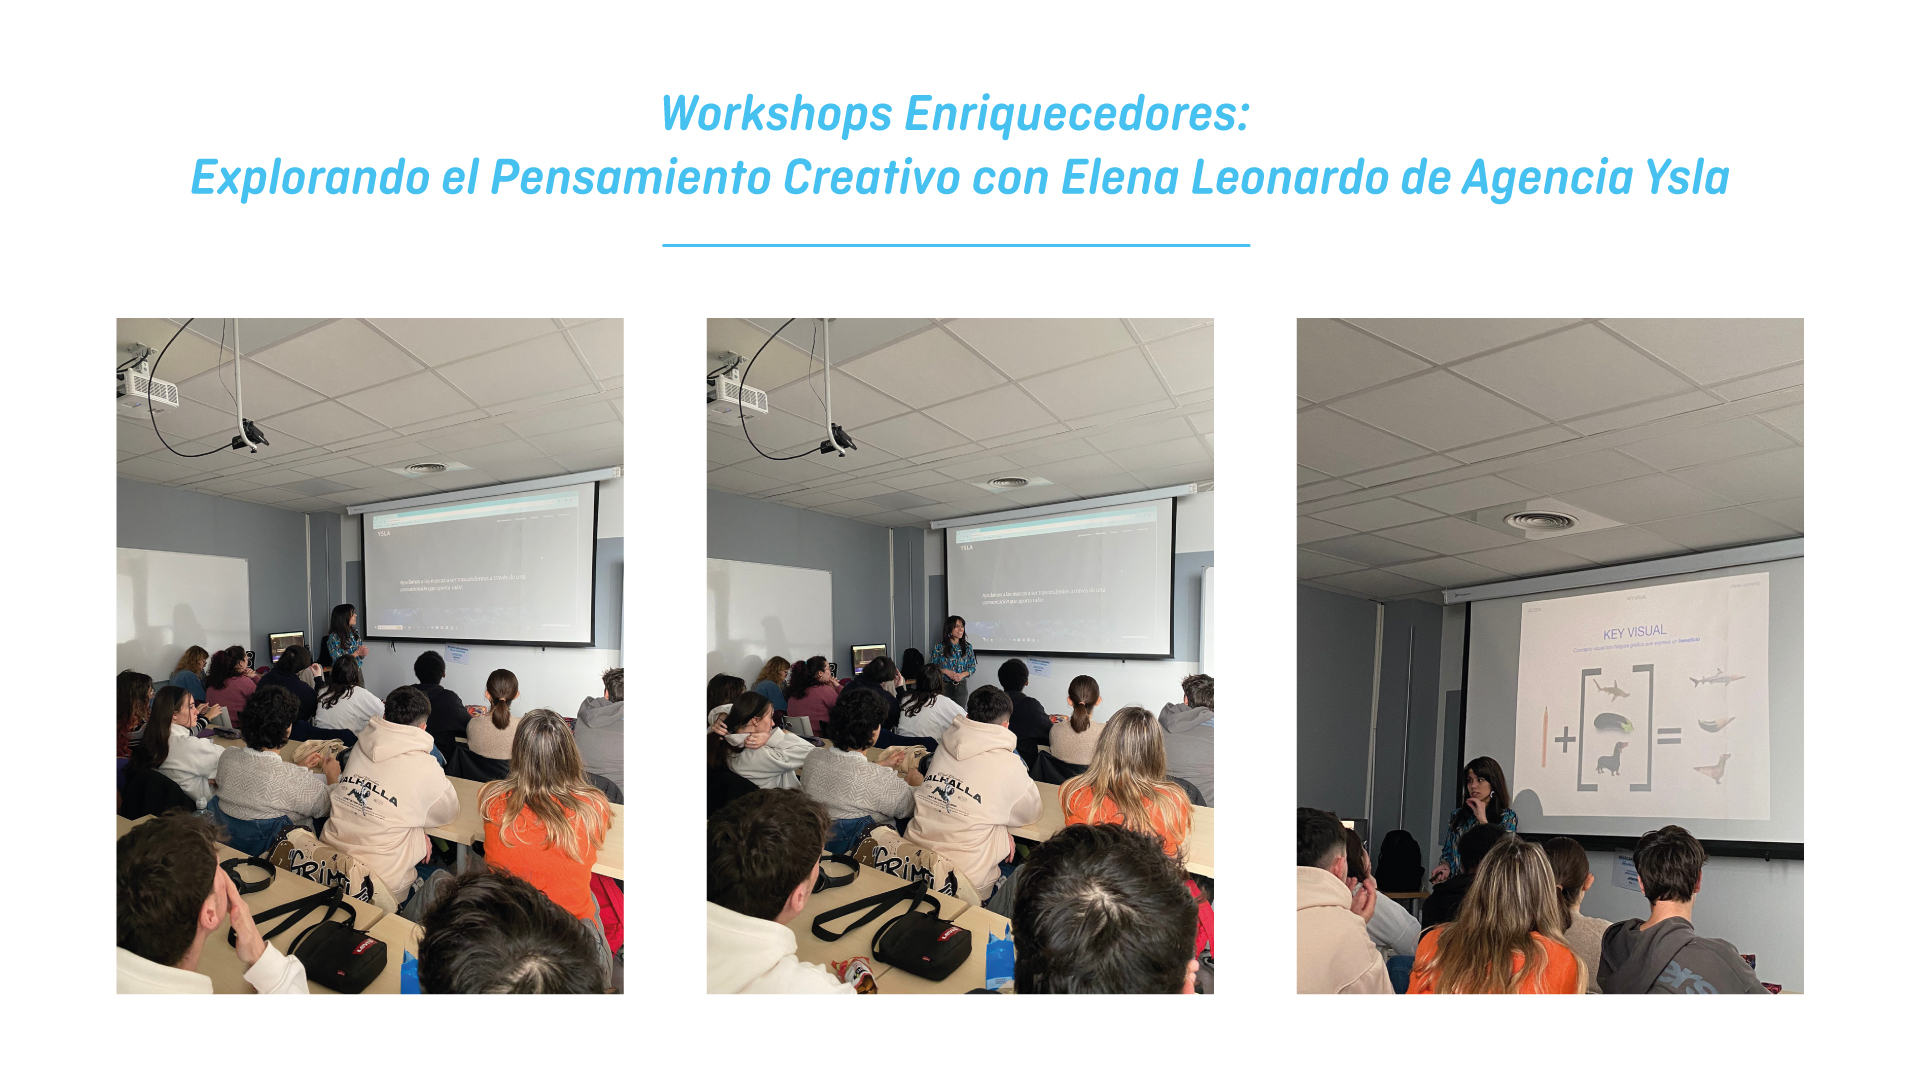 Workshops Enriquecedores: con Elena Leonardo de Agencia Ysla